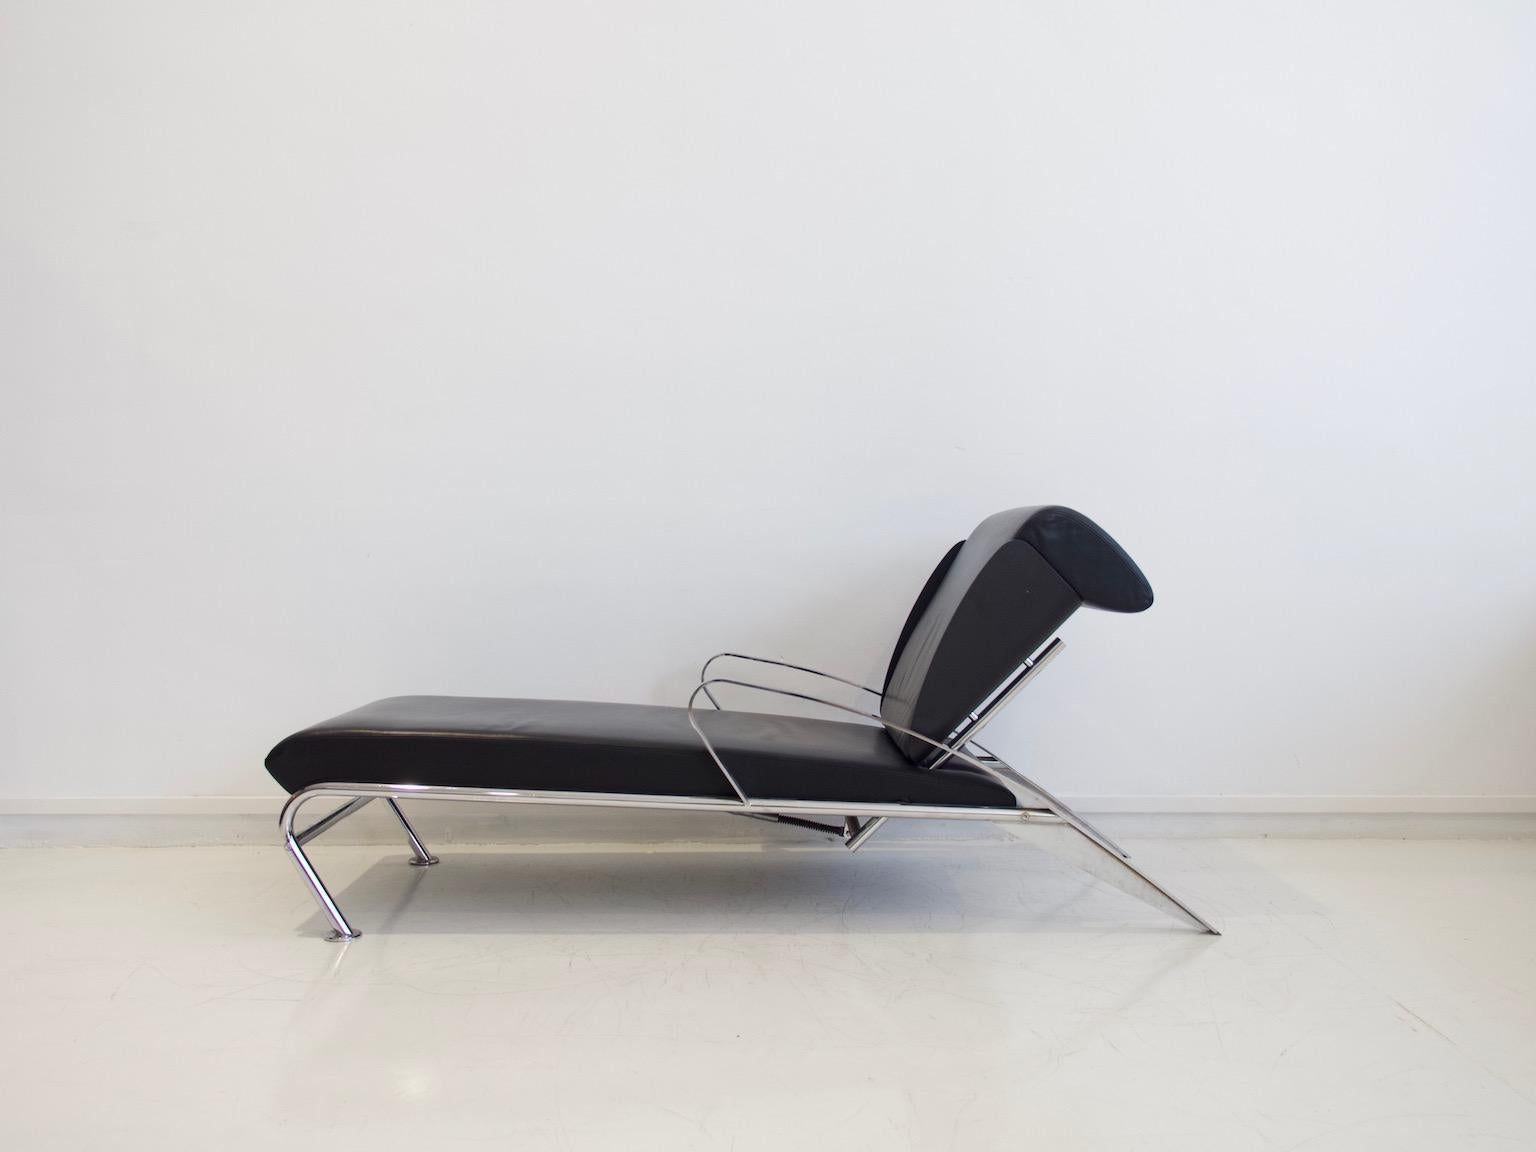 Chaise longue conçue par Massimo Iosa Ghini (né en 1959) et fabriquée par Moroso, design italien des années 1980. Construction réglable en acier chromé plat et rond. Coque en contreplaqué moulé laqué noir et housses en cuir noir. Tête de lit